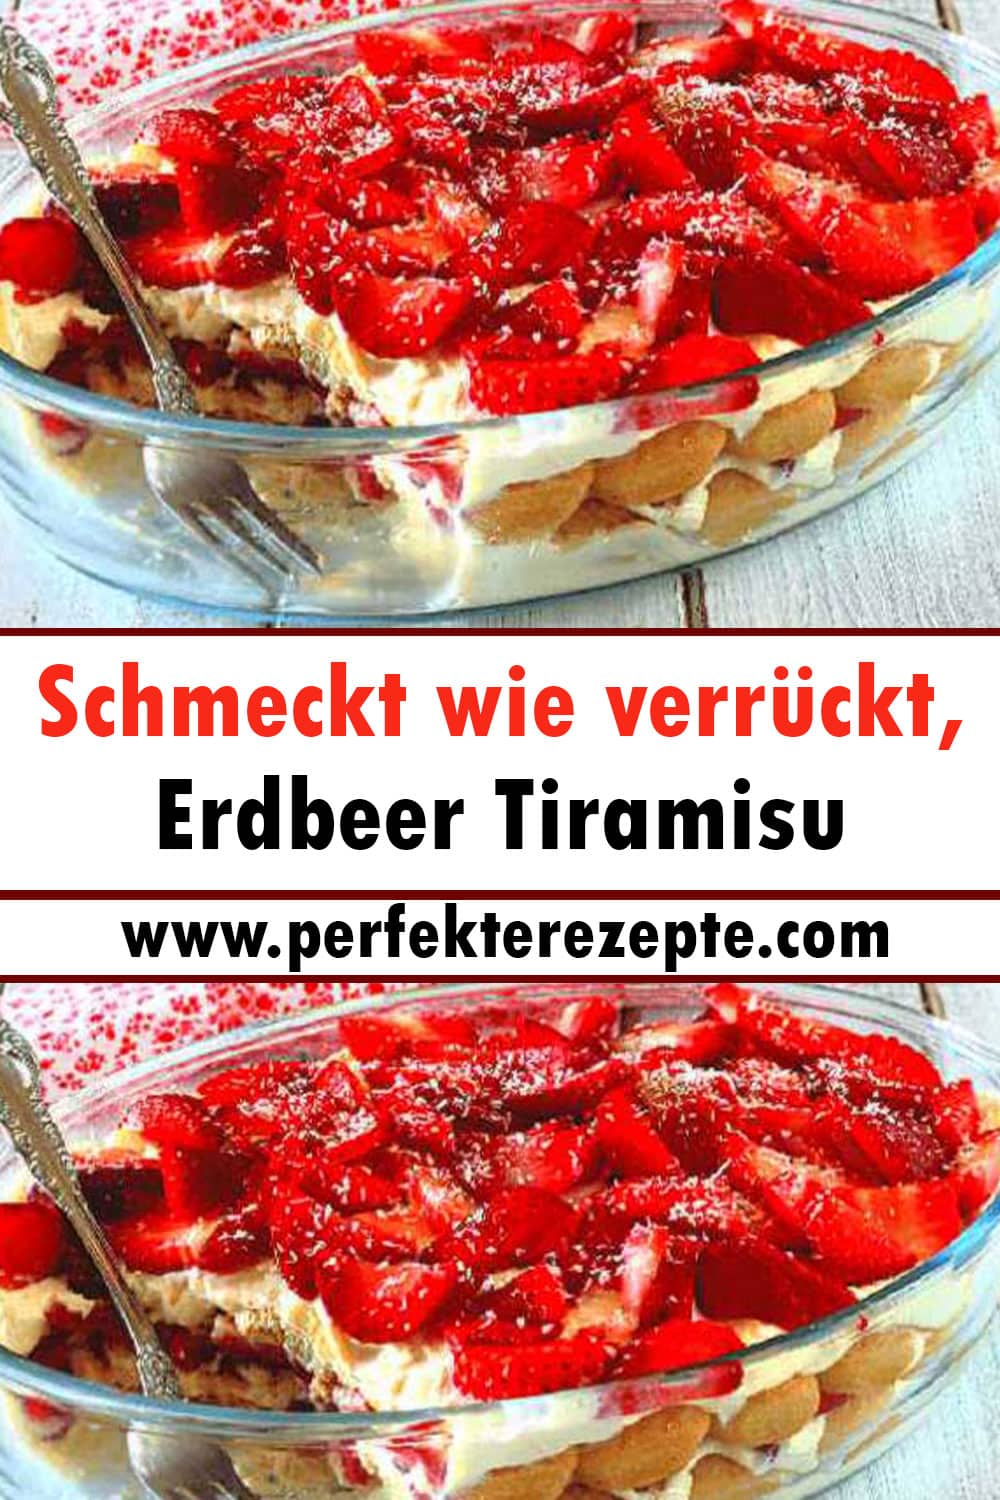 Schmeckt wie verrückt, Erdbeer Tiramisu Rezept!